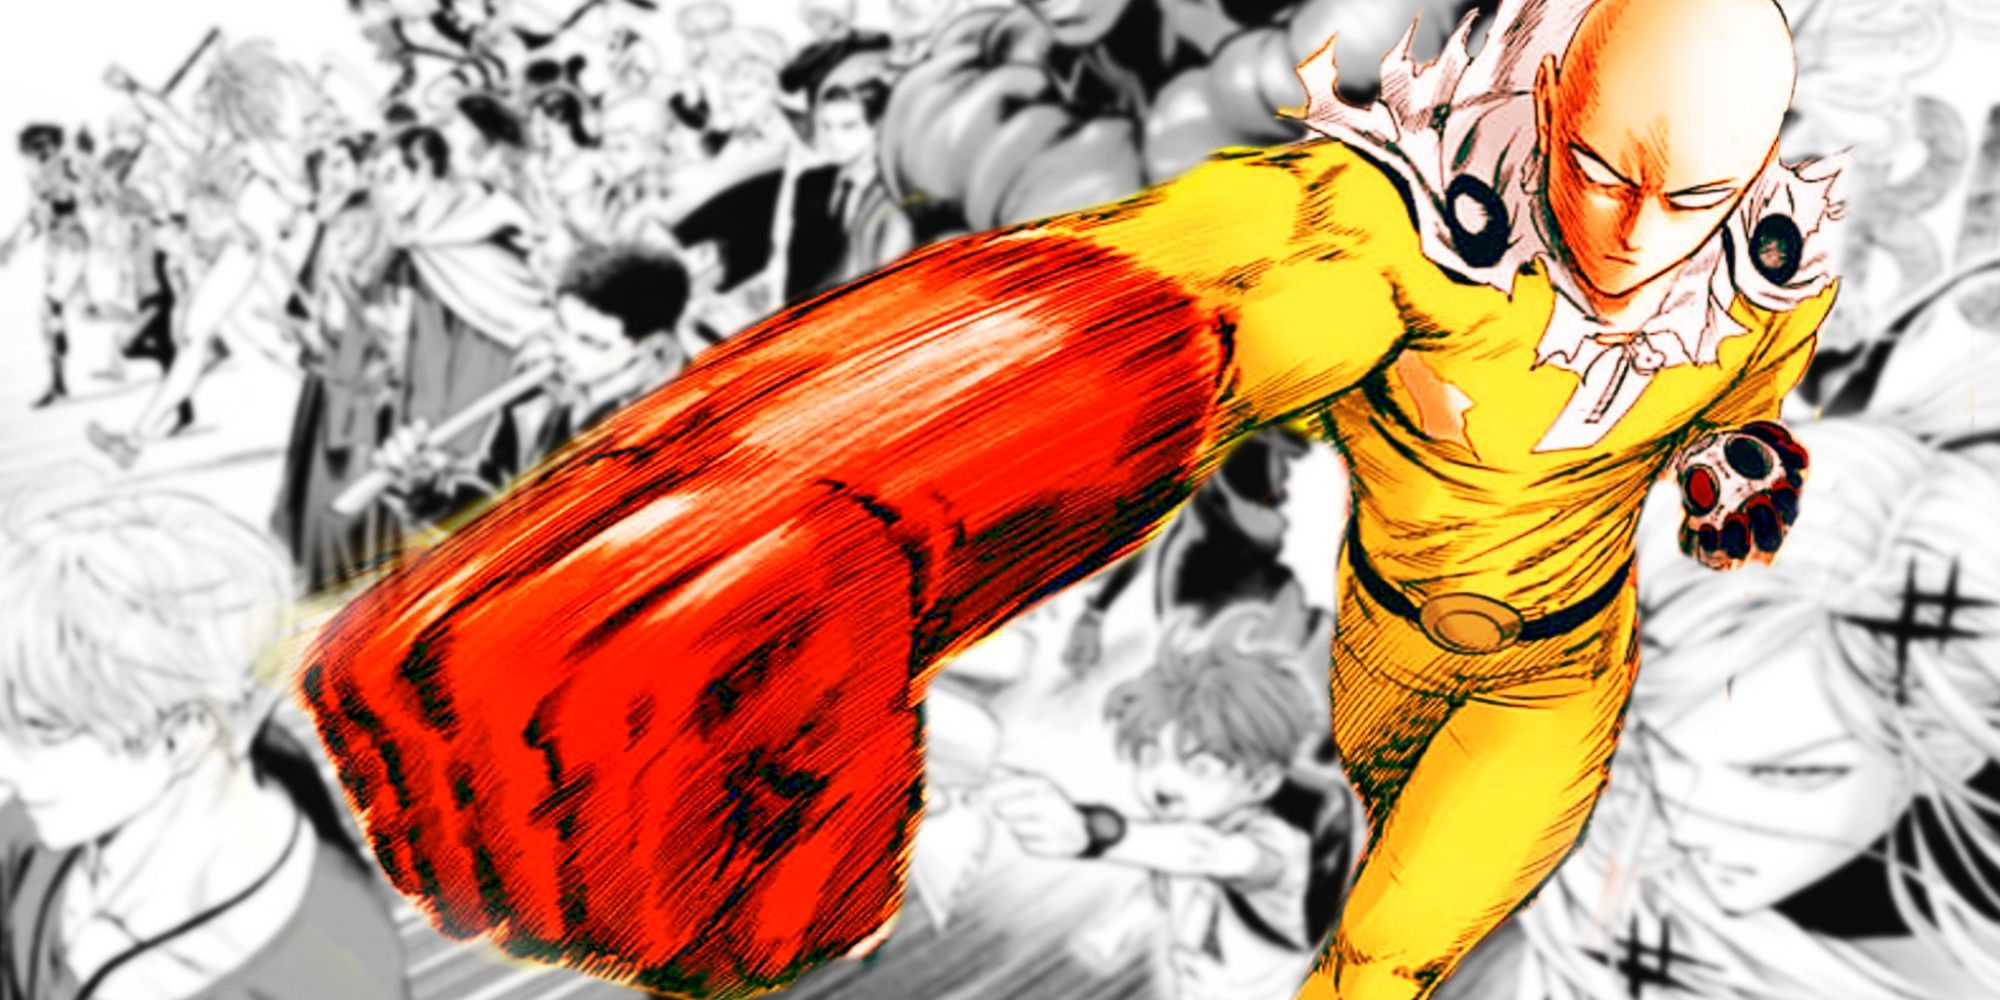 La temporada 3 de One-Punch Man podría ser uno de los mejores arcos del anime Shonen de todos los tiempos